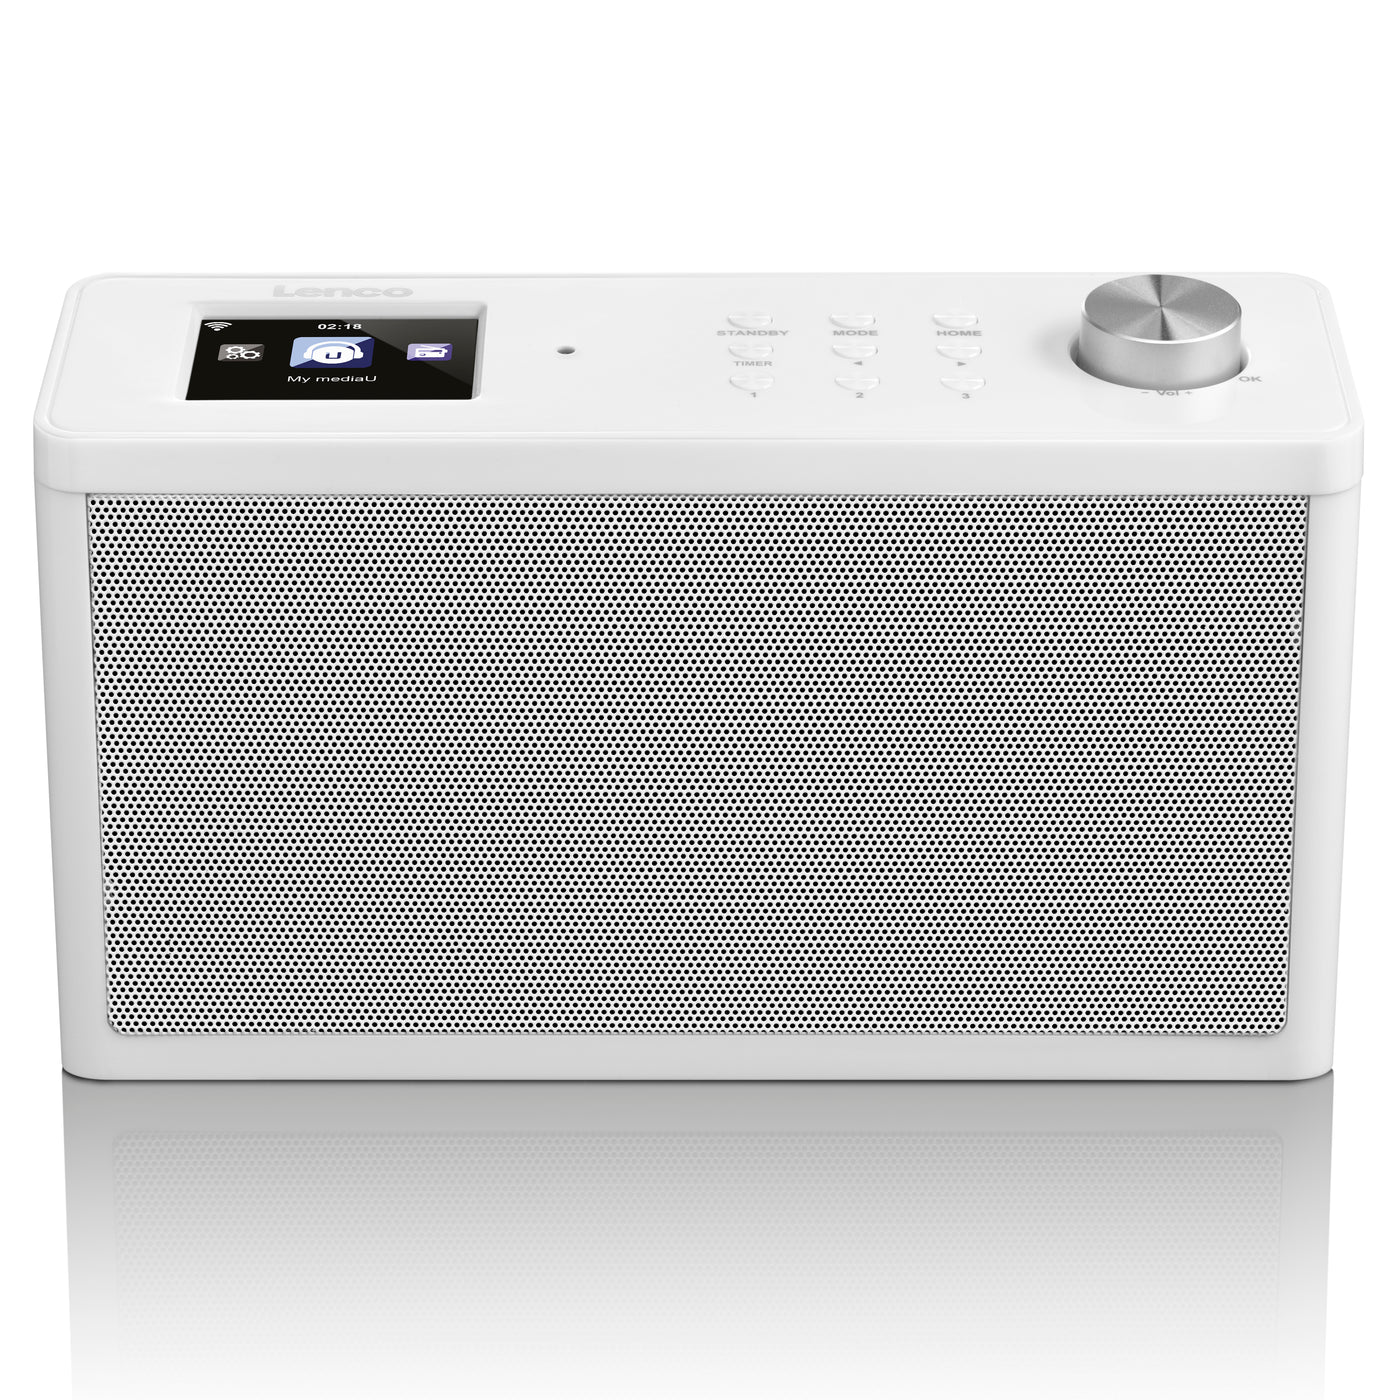 Lenco KCR-14 - Internet Küchenradio mit FM - Weiß